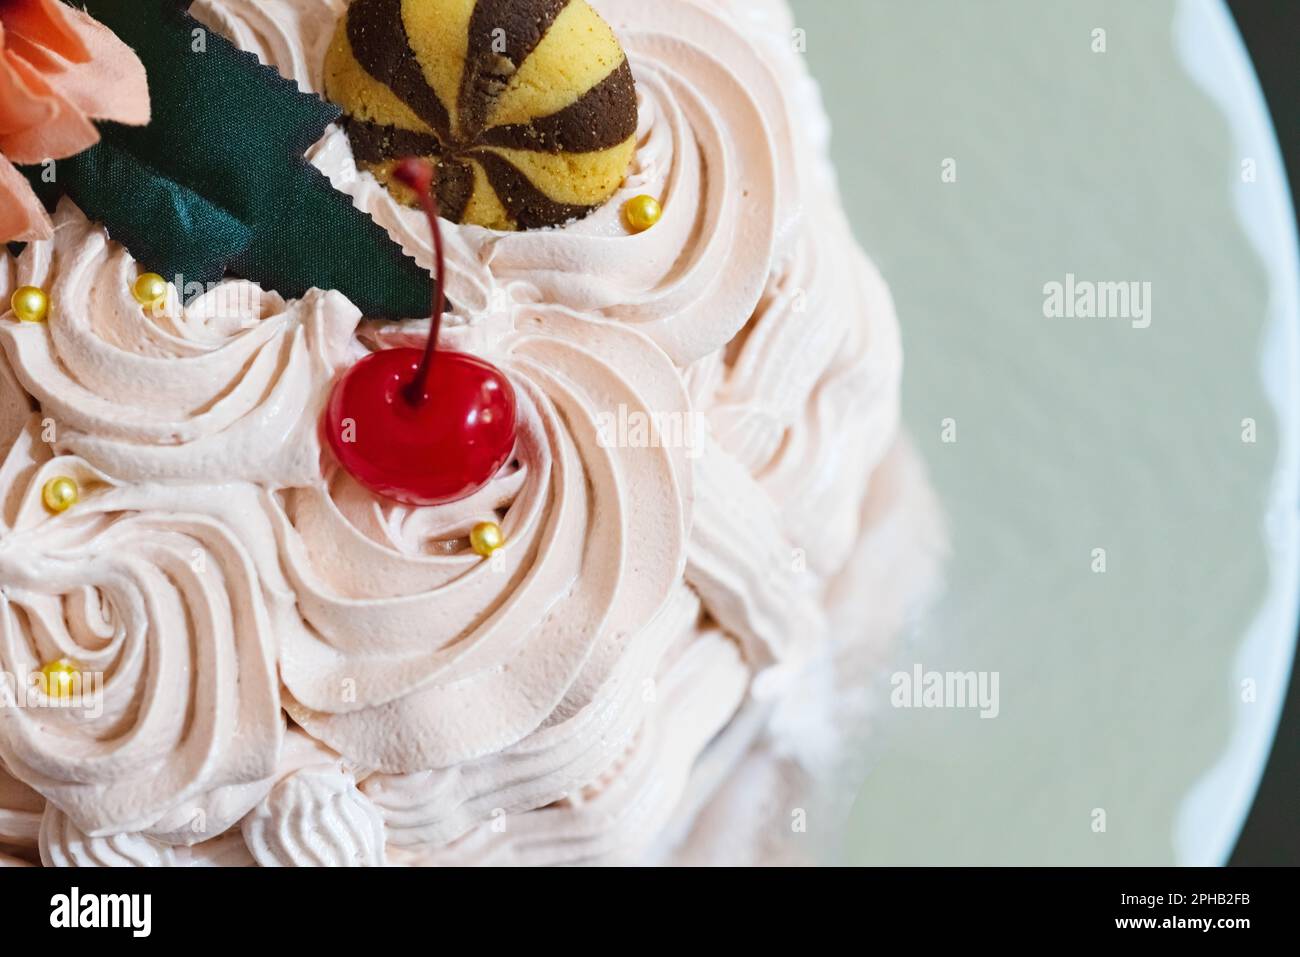 Korbförmiger Kuchen mit Süßigkeiten, Keksen und Blumen. Ostern markiert das Ende der Heiligen Woche, in den USA als Spring Break bekannt Stockfoto